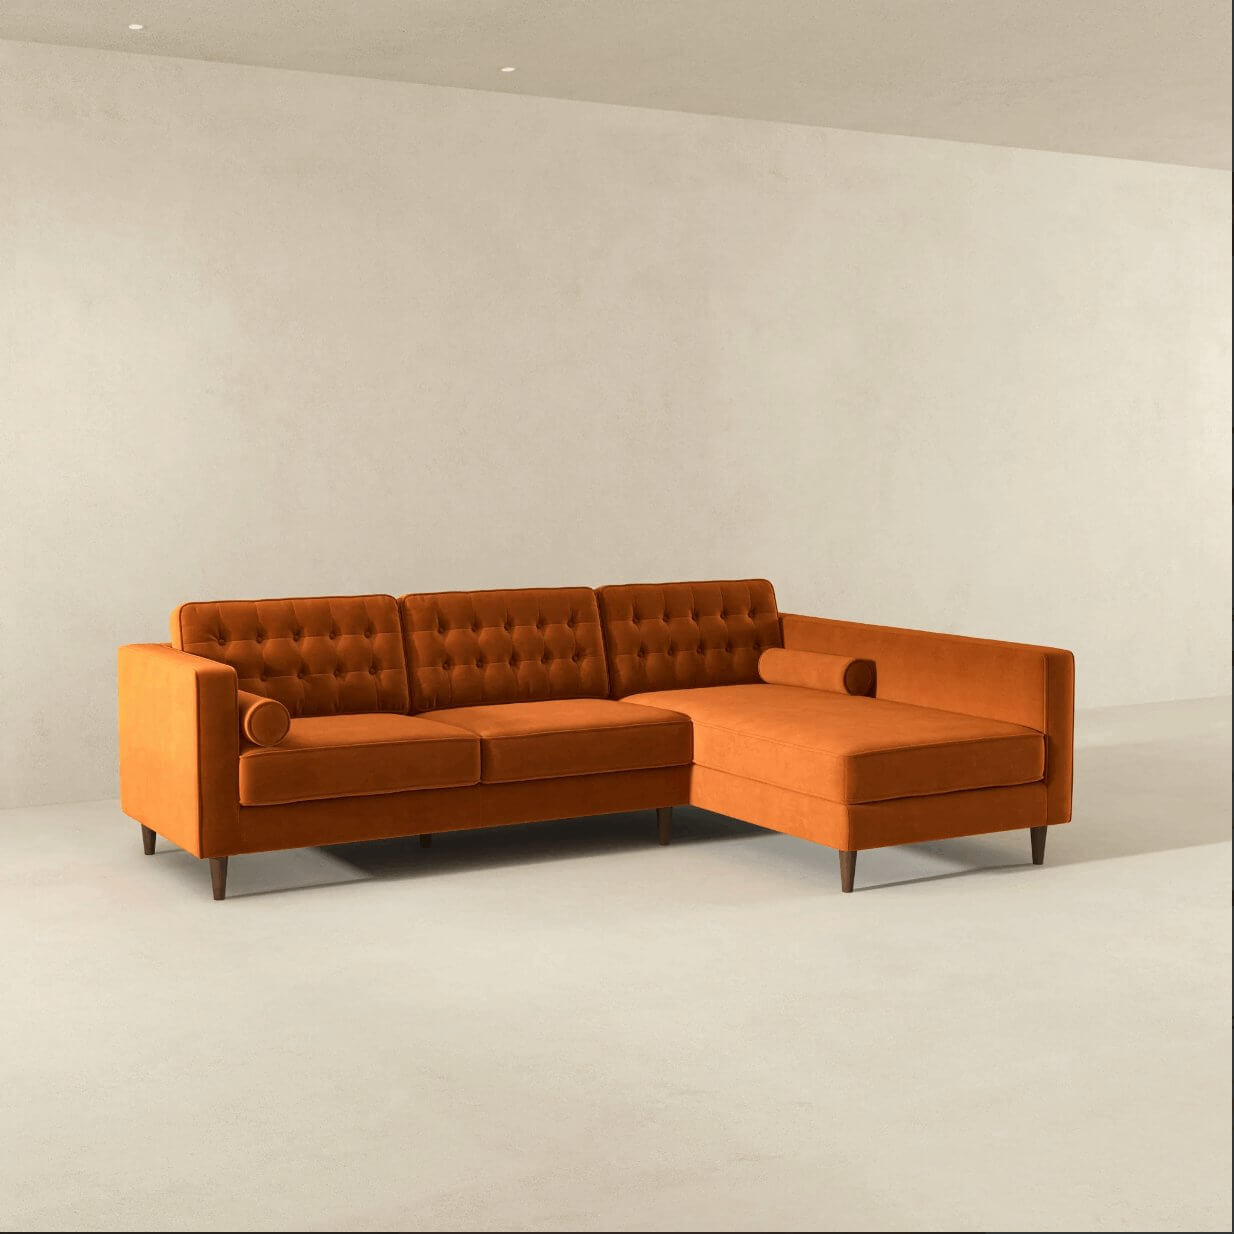 Christian MCM Tufted Velvet Chaise Sectional Sofa 102" - Revel Sofa 